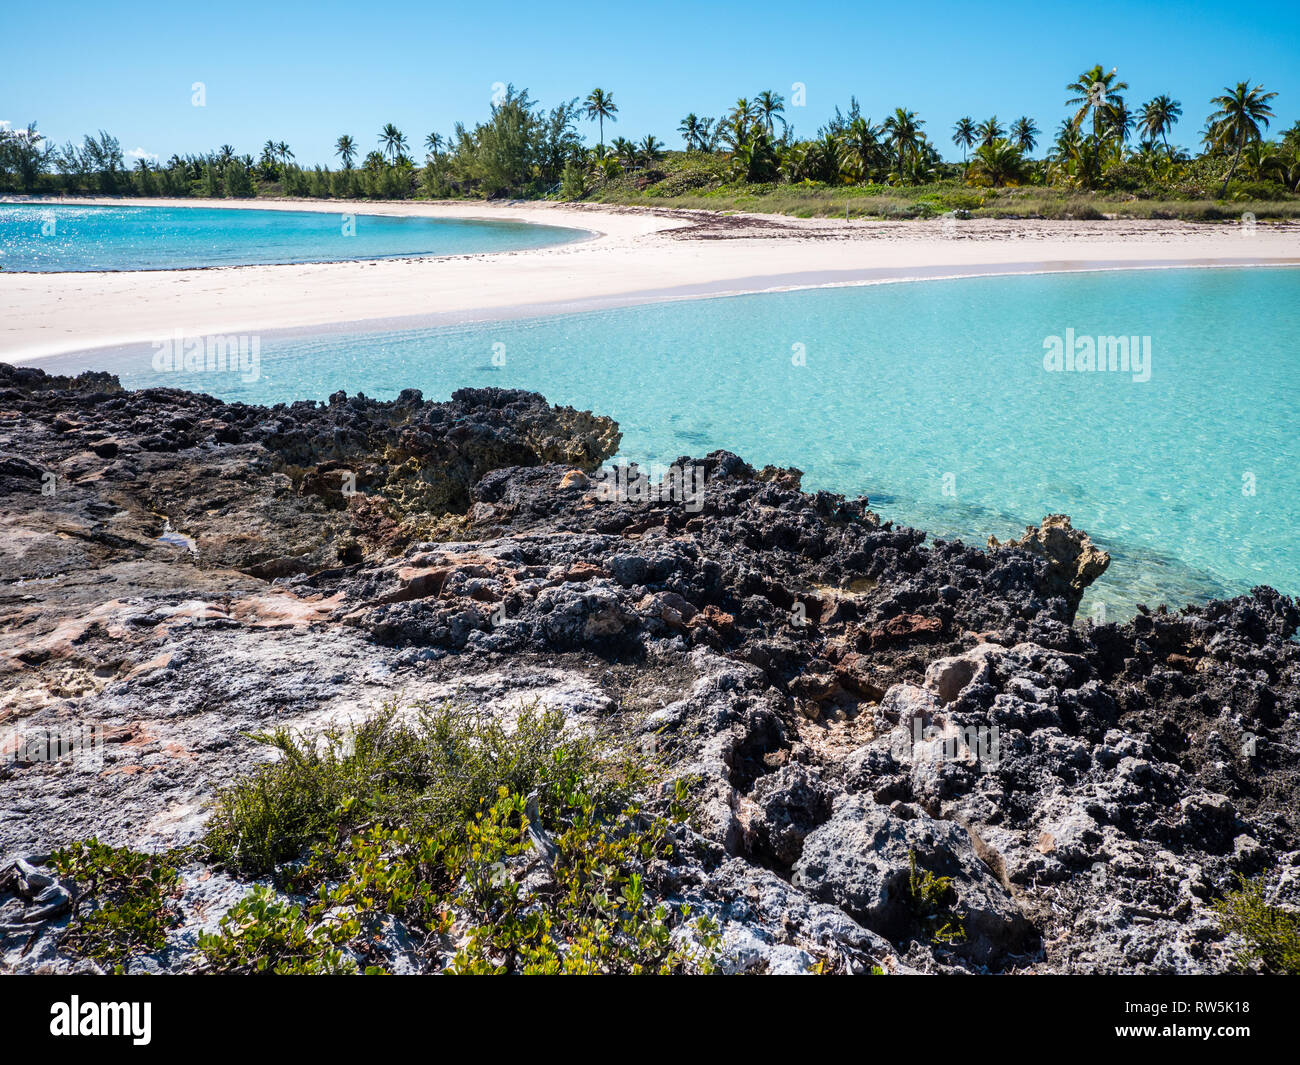 Coral Island avec vue sur la plage des anses double, Governor's Harbour, Île Eleuthera, Bahamas, dans les Caraïbes. Banque D'Images